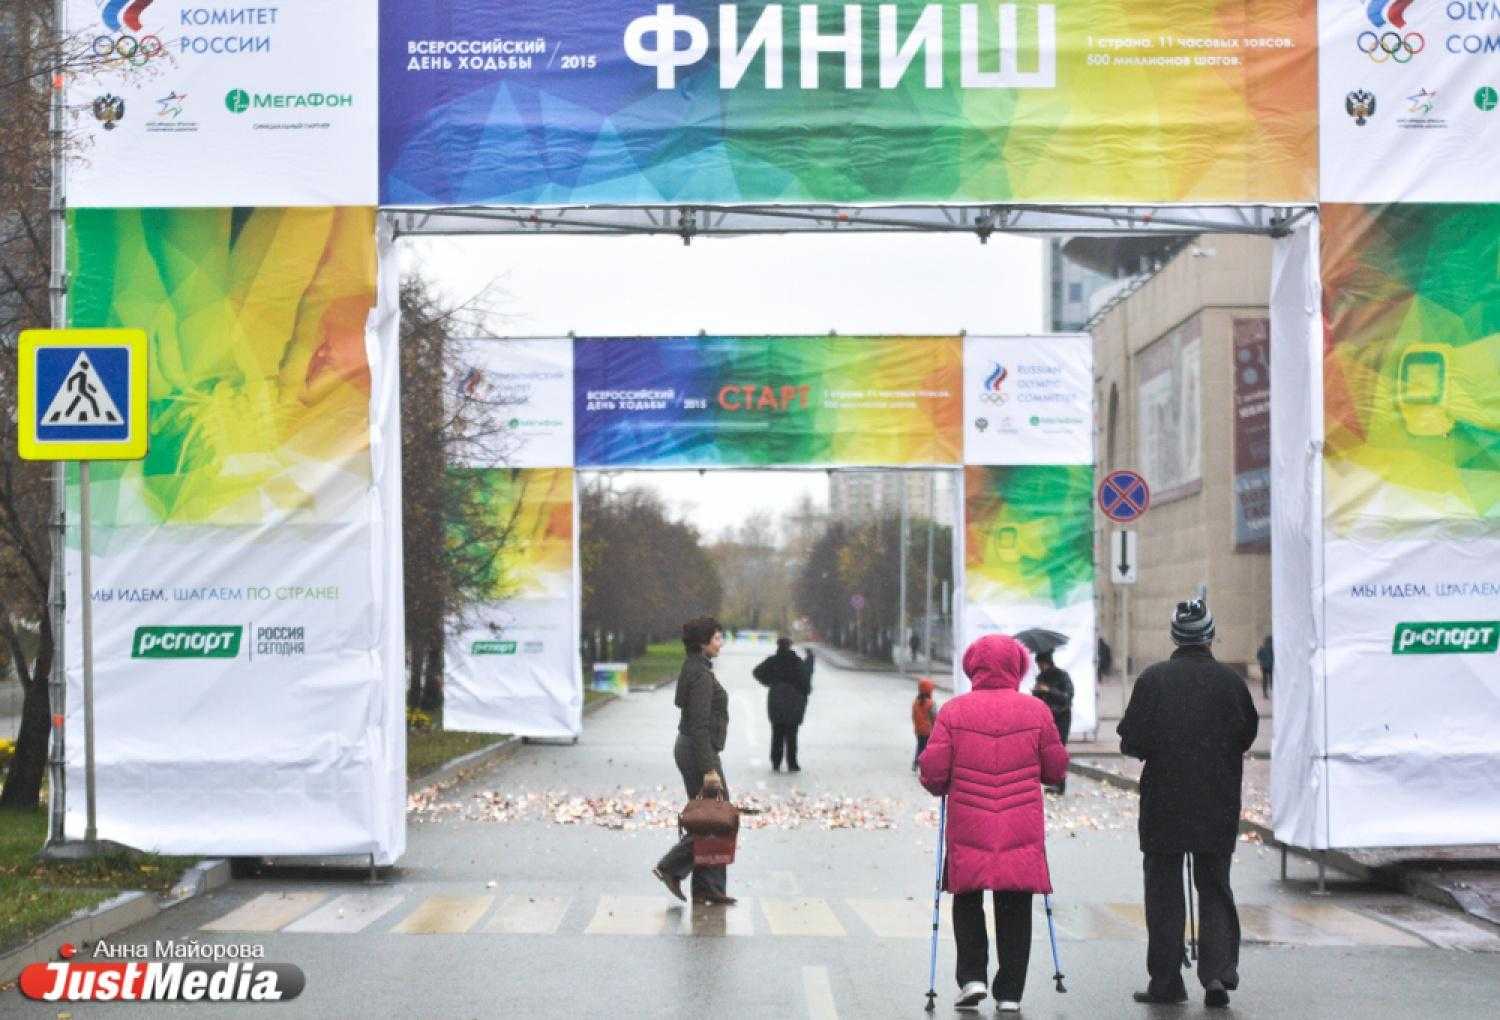 Всероссийский день ходьбы и битвы футбольных грандов: спорт на выходных -  спорт - тасс